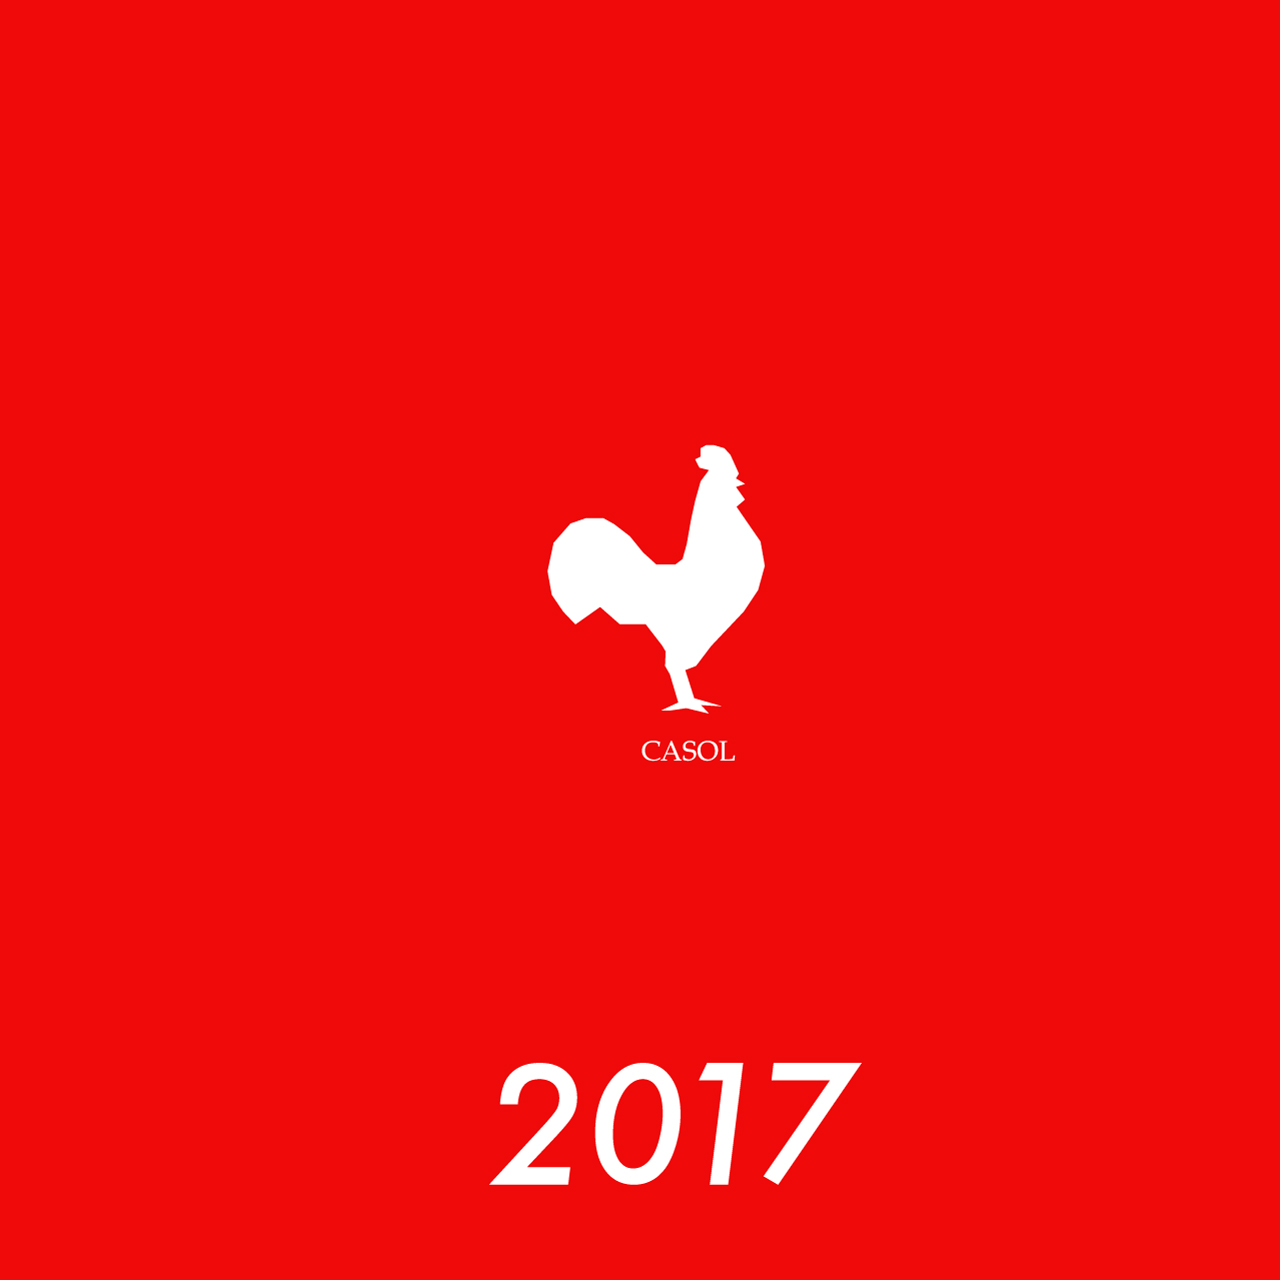 Coq Casol 2017